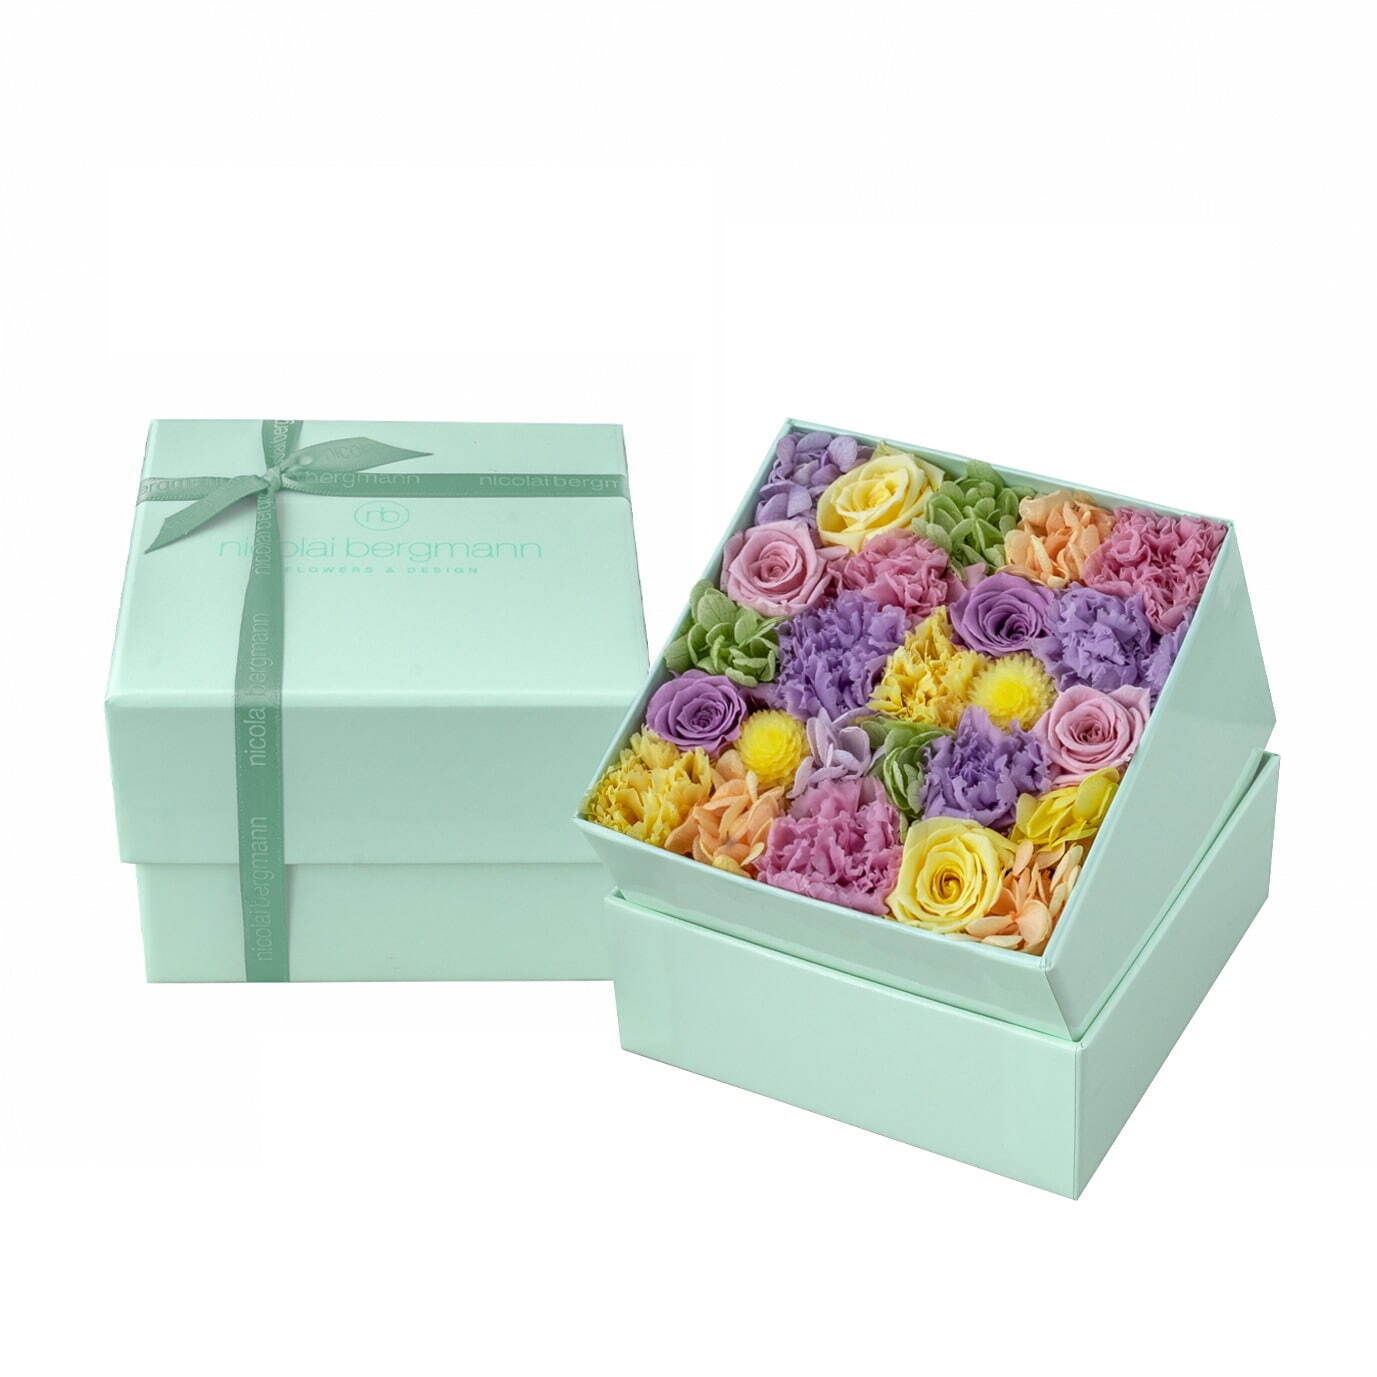 ニコライ バーグマンの夏限定フラワーボックス、コーラルグリーンのボックスにパステルカラーの花々｜写真6